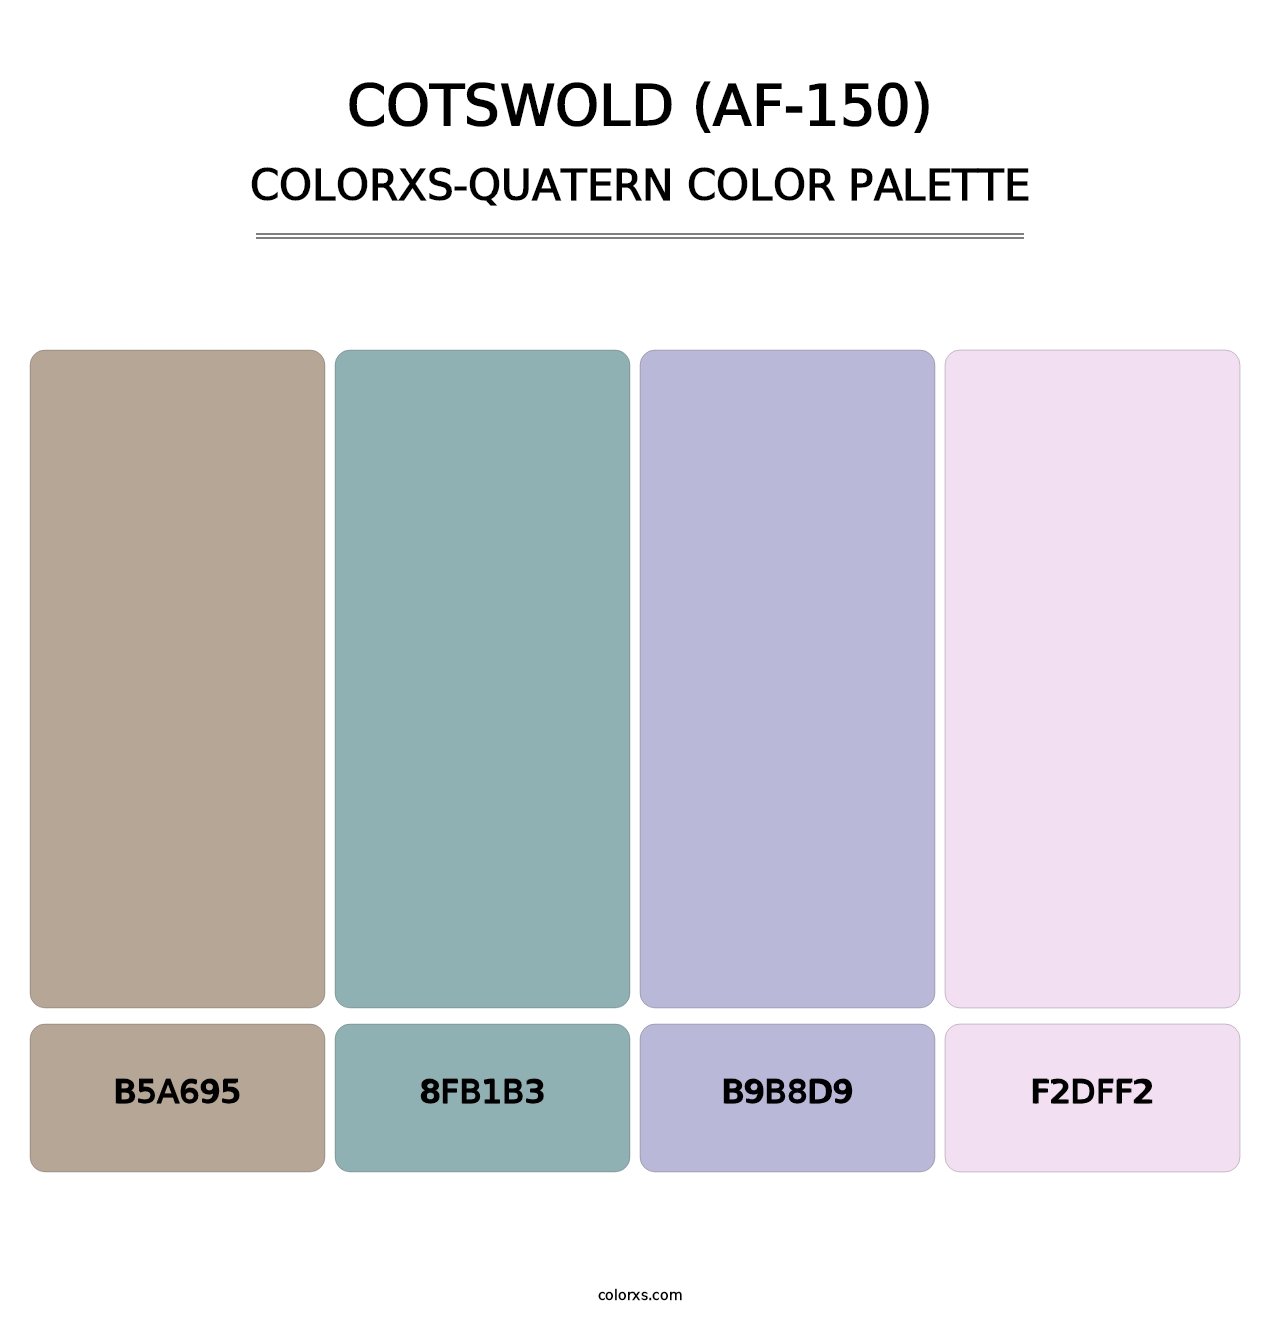 Cotswold (AF-150) - Colorxs Quatern Palette